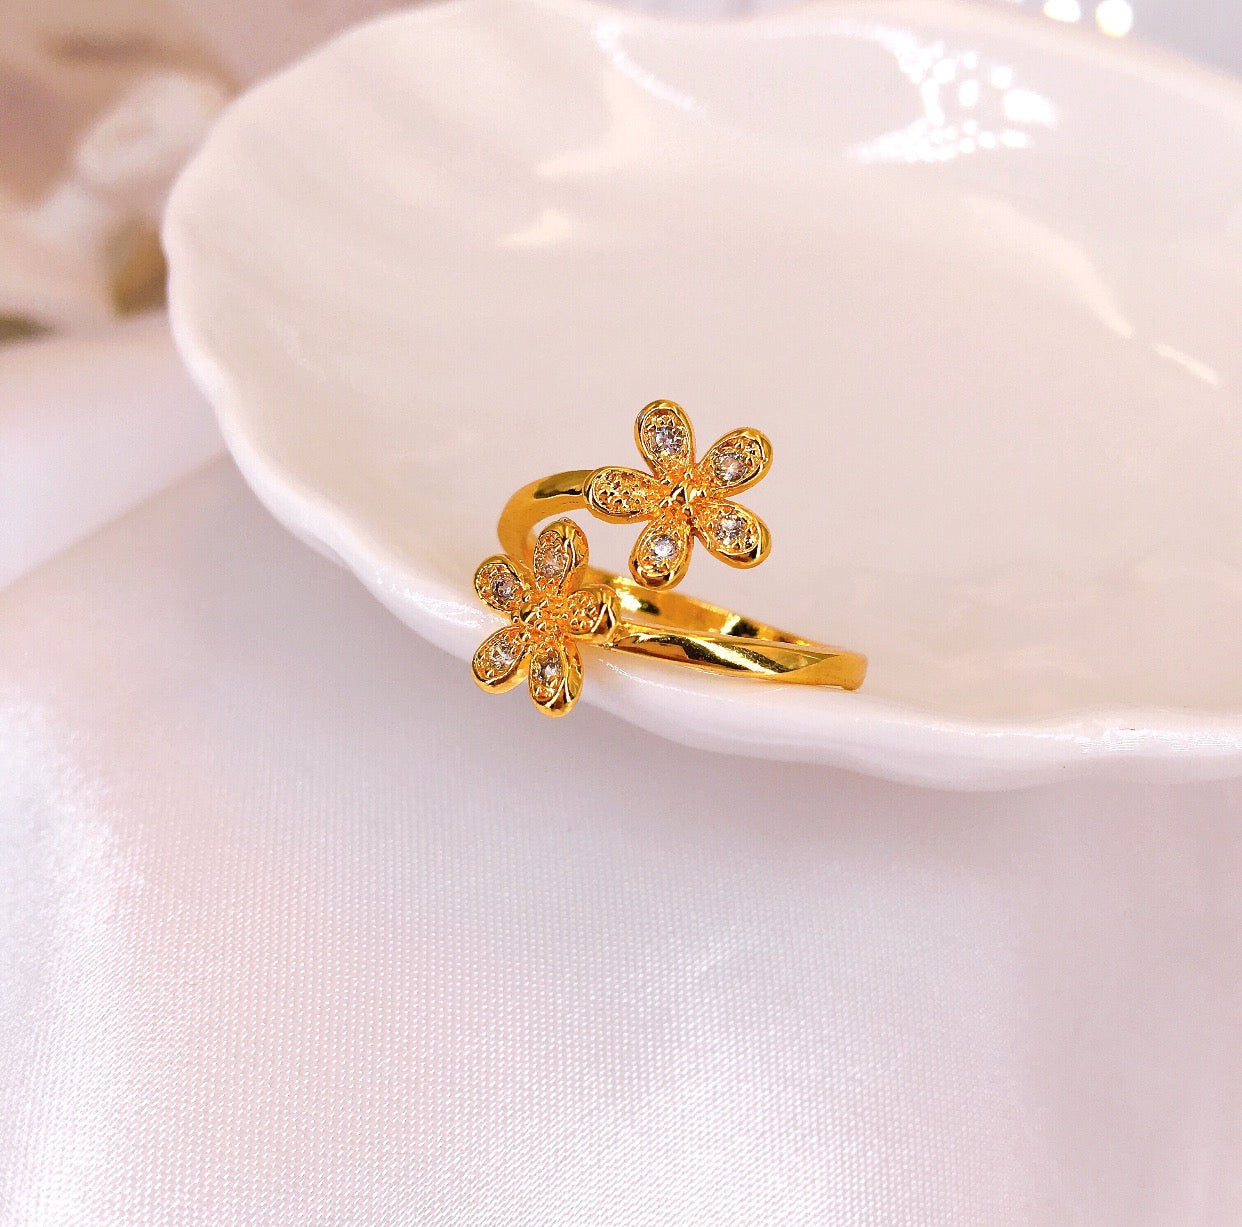 18K Bangkok Gold Manmade Diamond Inlaid Adjustable Ring